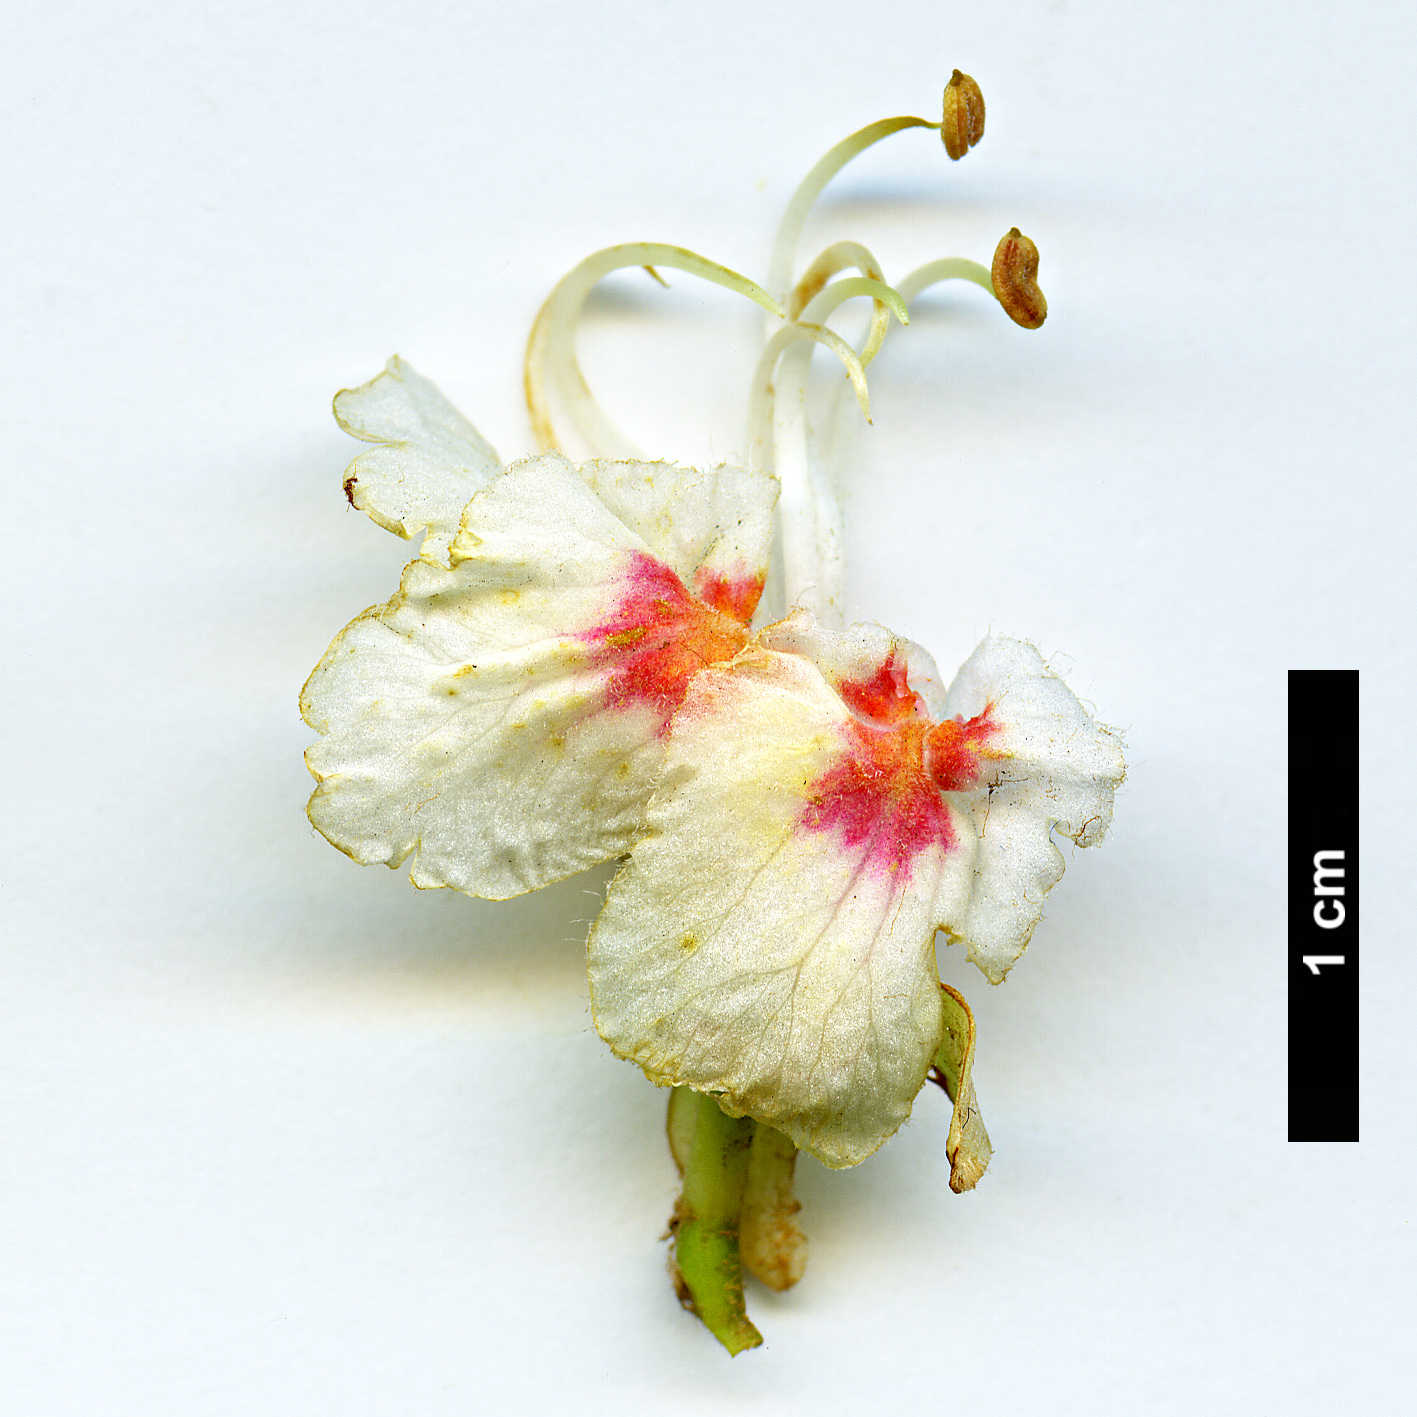 High resolution image: Family: Sapindaceae - Genus: Aesculus - Taxon: hippocastanum